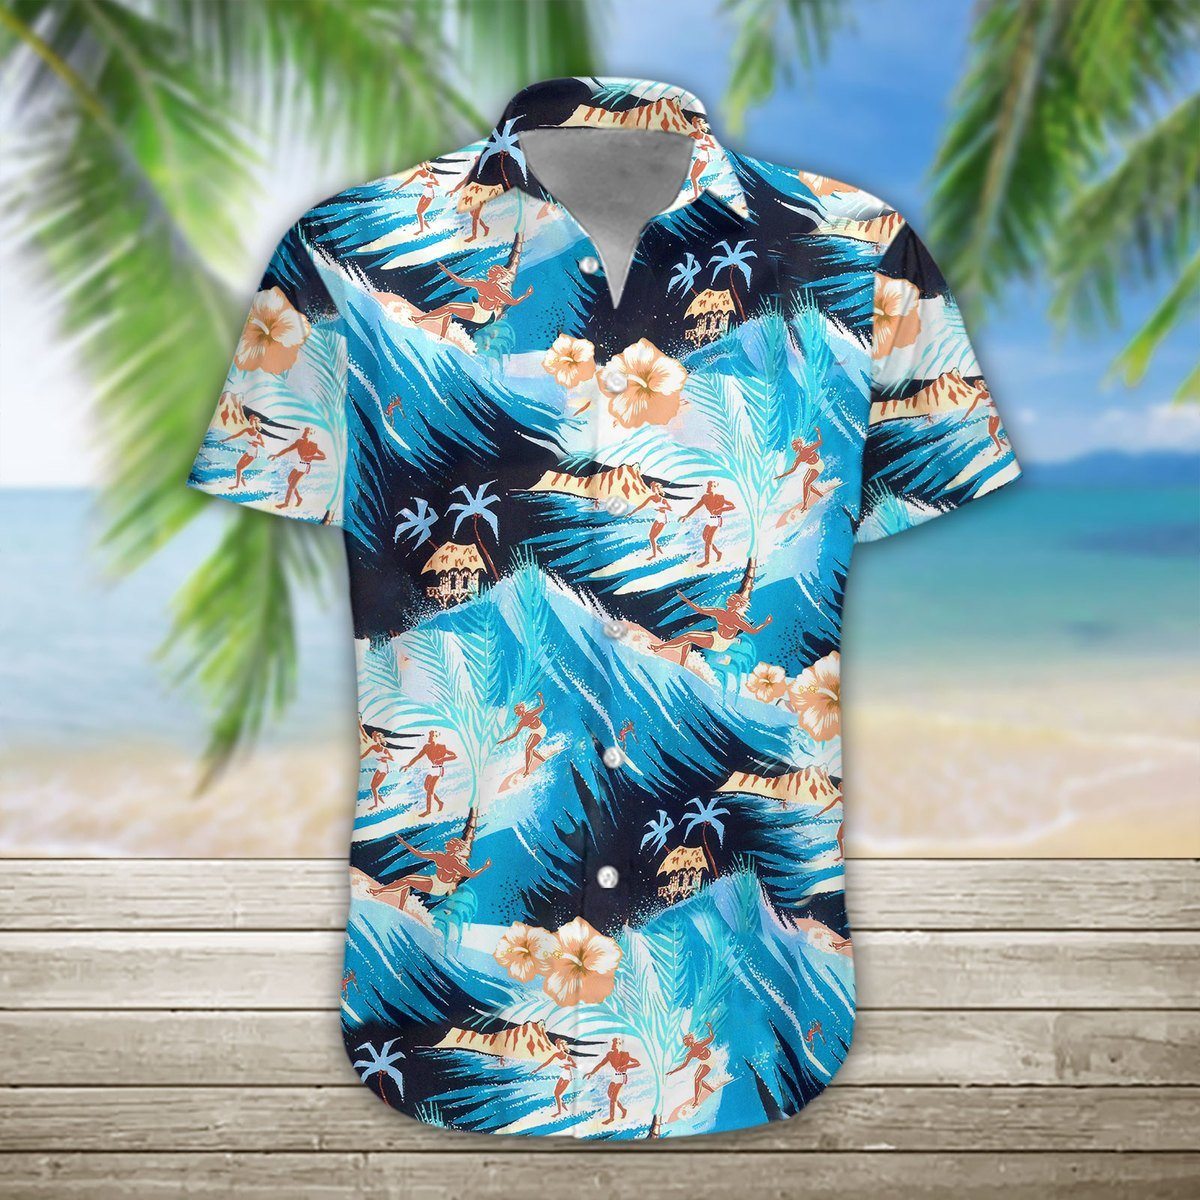 Gearhumans 3D Surfing Hawaii Shirt ZG-HW19072005-AL Short Sleeve Shirt